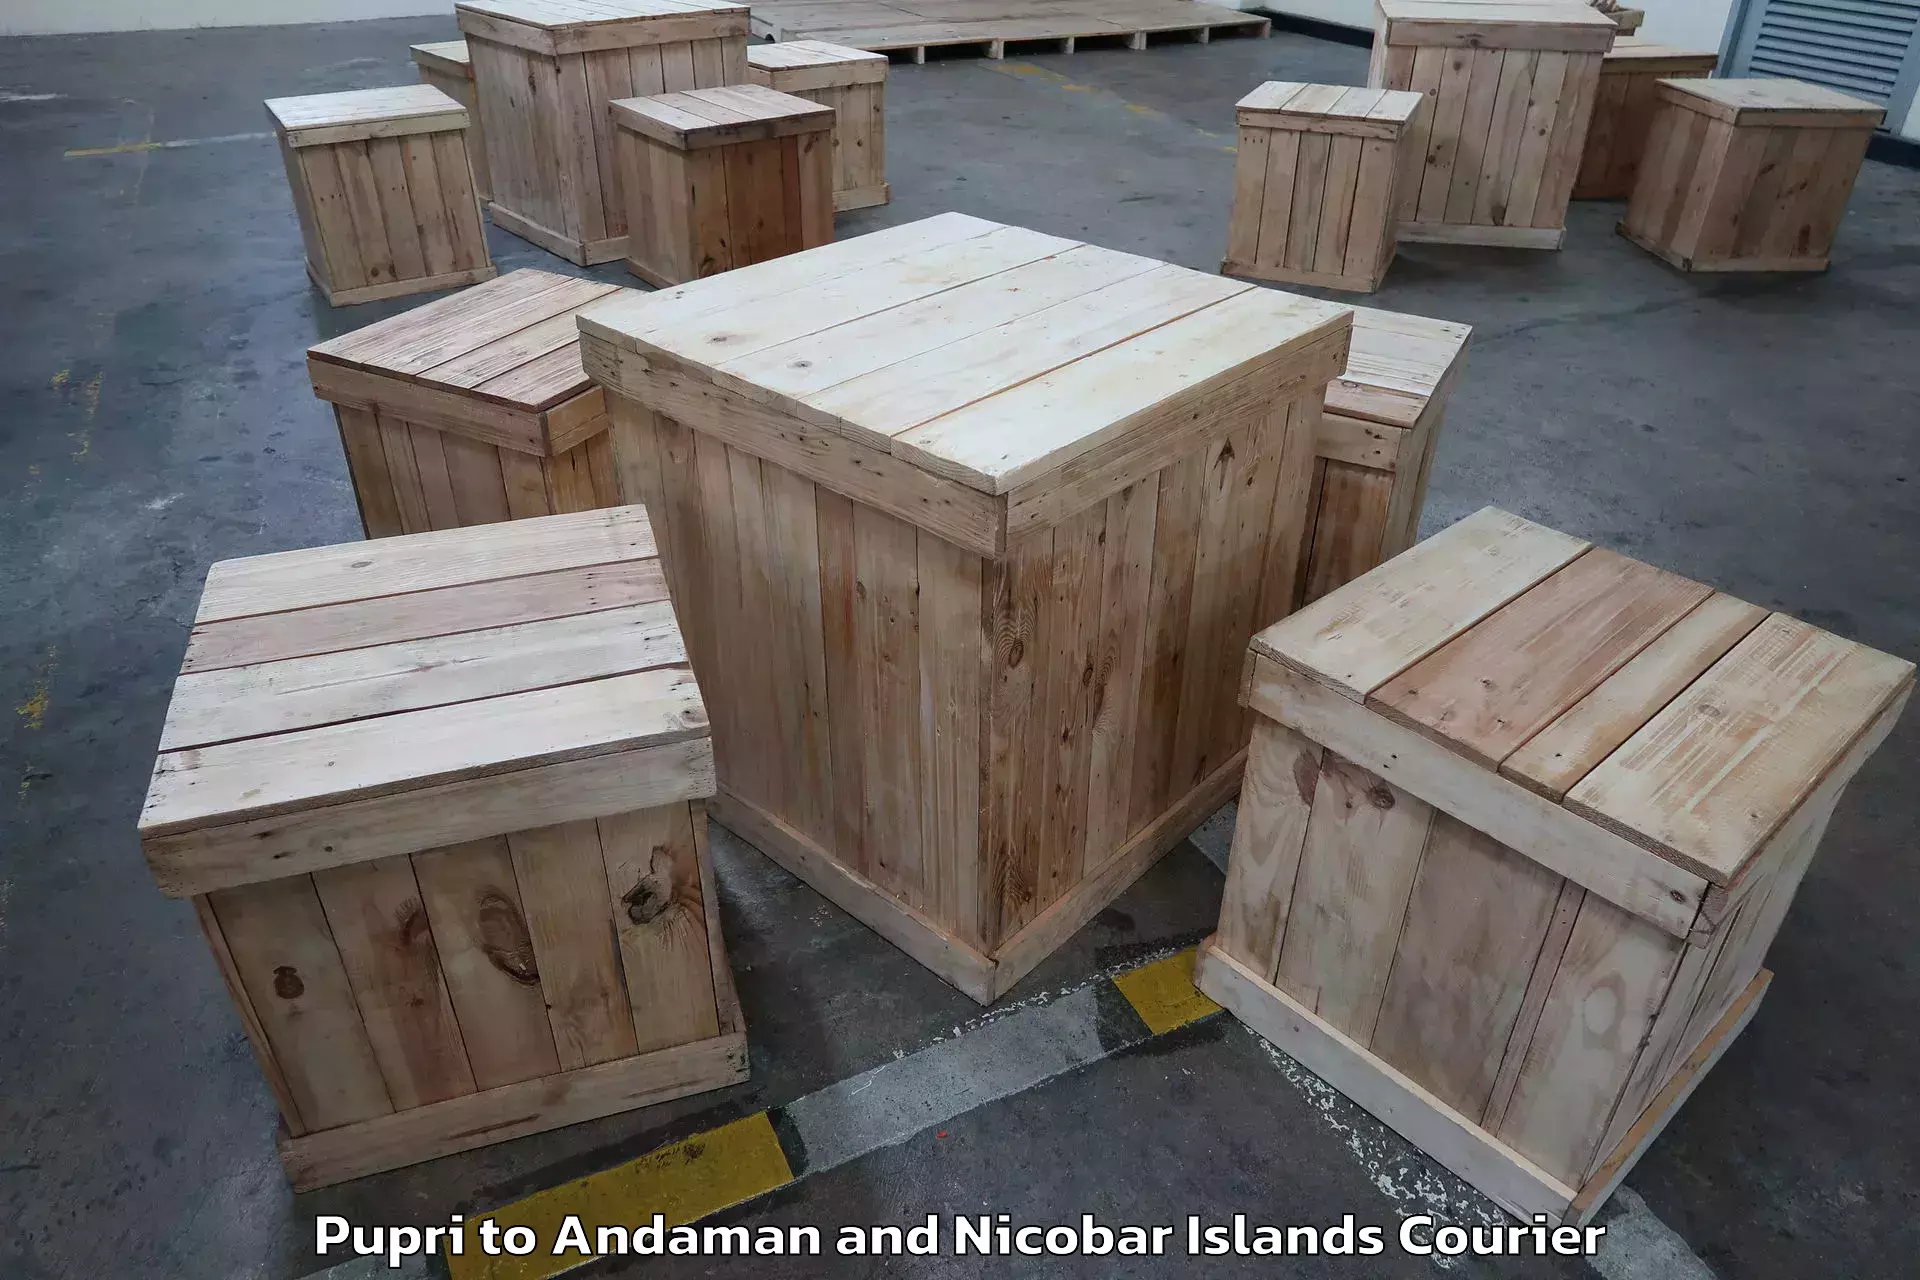 Furniture transport experts Pupri to Andaman and Nicobar Islands